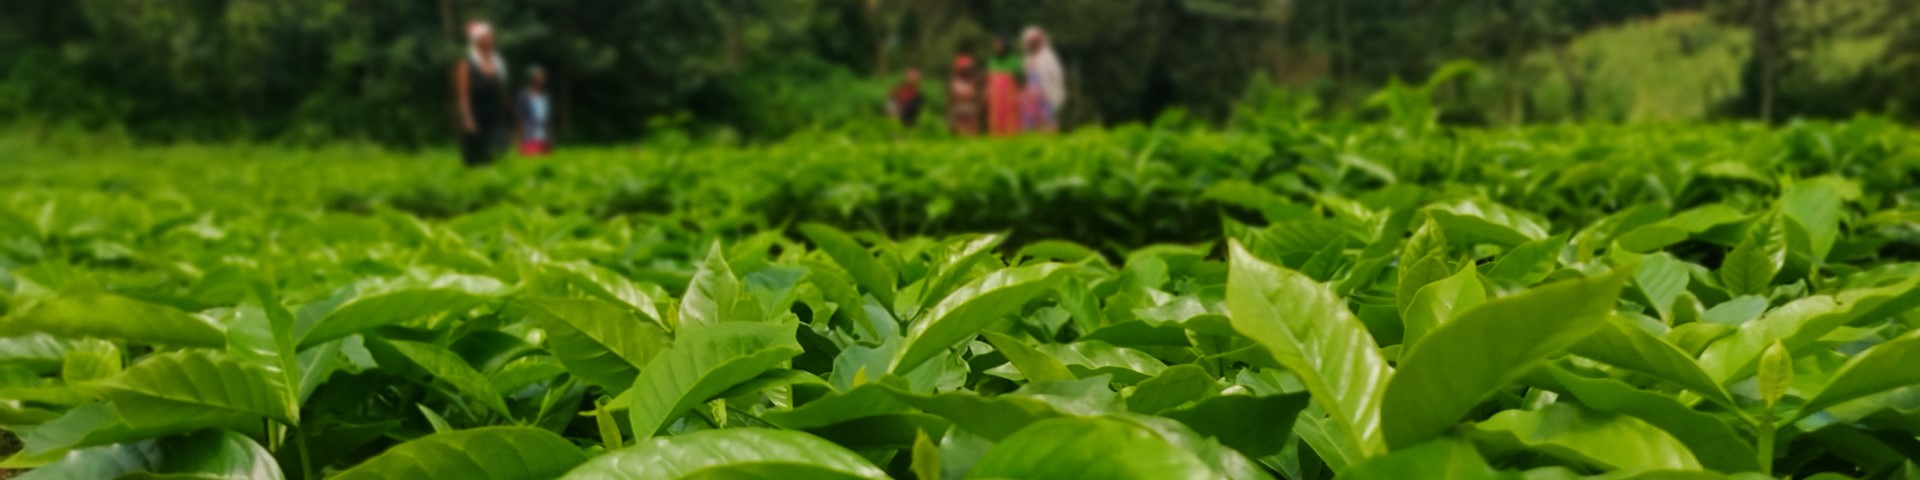 Junge Kaffeepflanzen auf einem Feld. Im Hintergrund sind unscharf mehrere Personen zu erkennen.